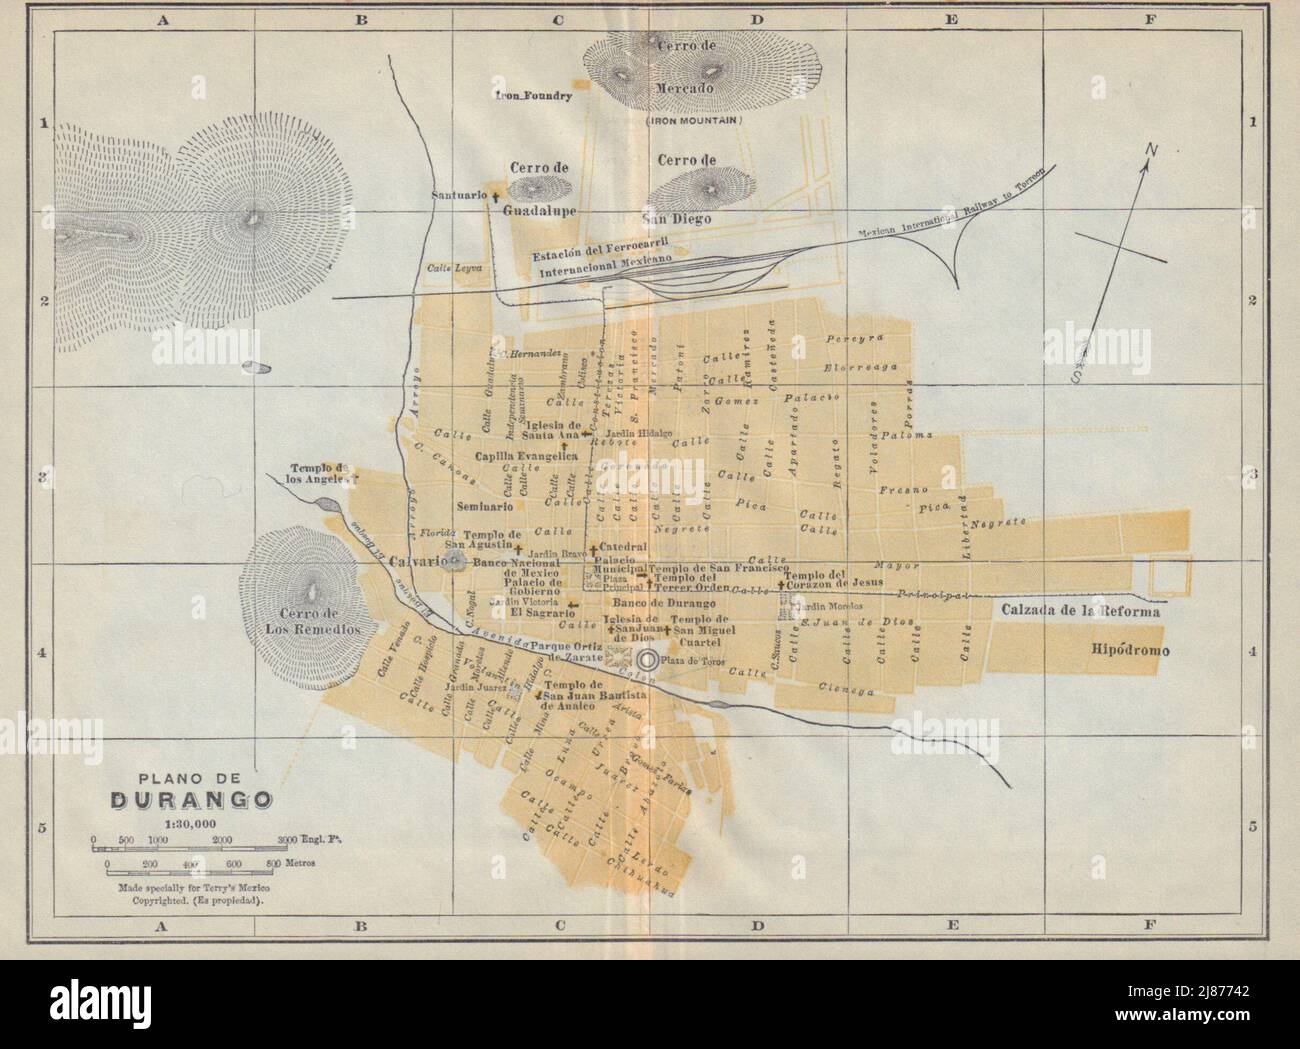 Plano de VICTORIA DE DURANGO, Mexico. Mapa de la ciudad. City/town plan 1938 Stock Photo